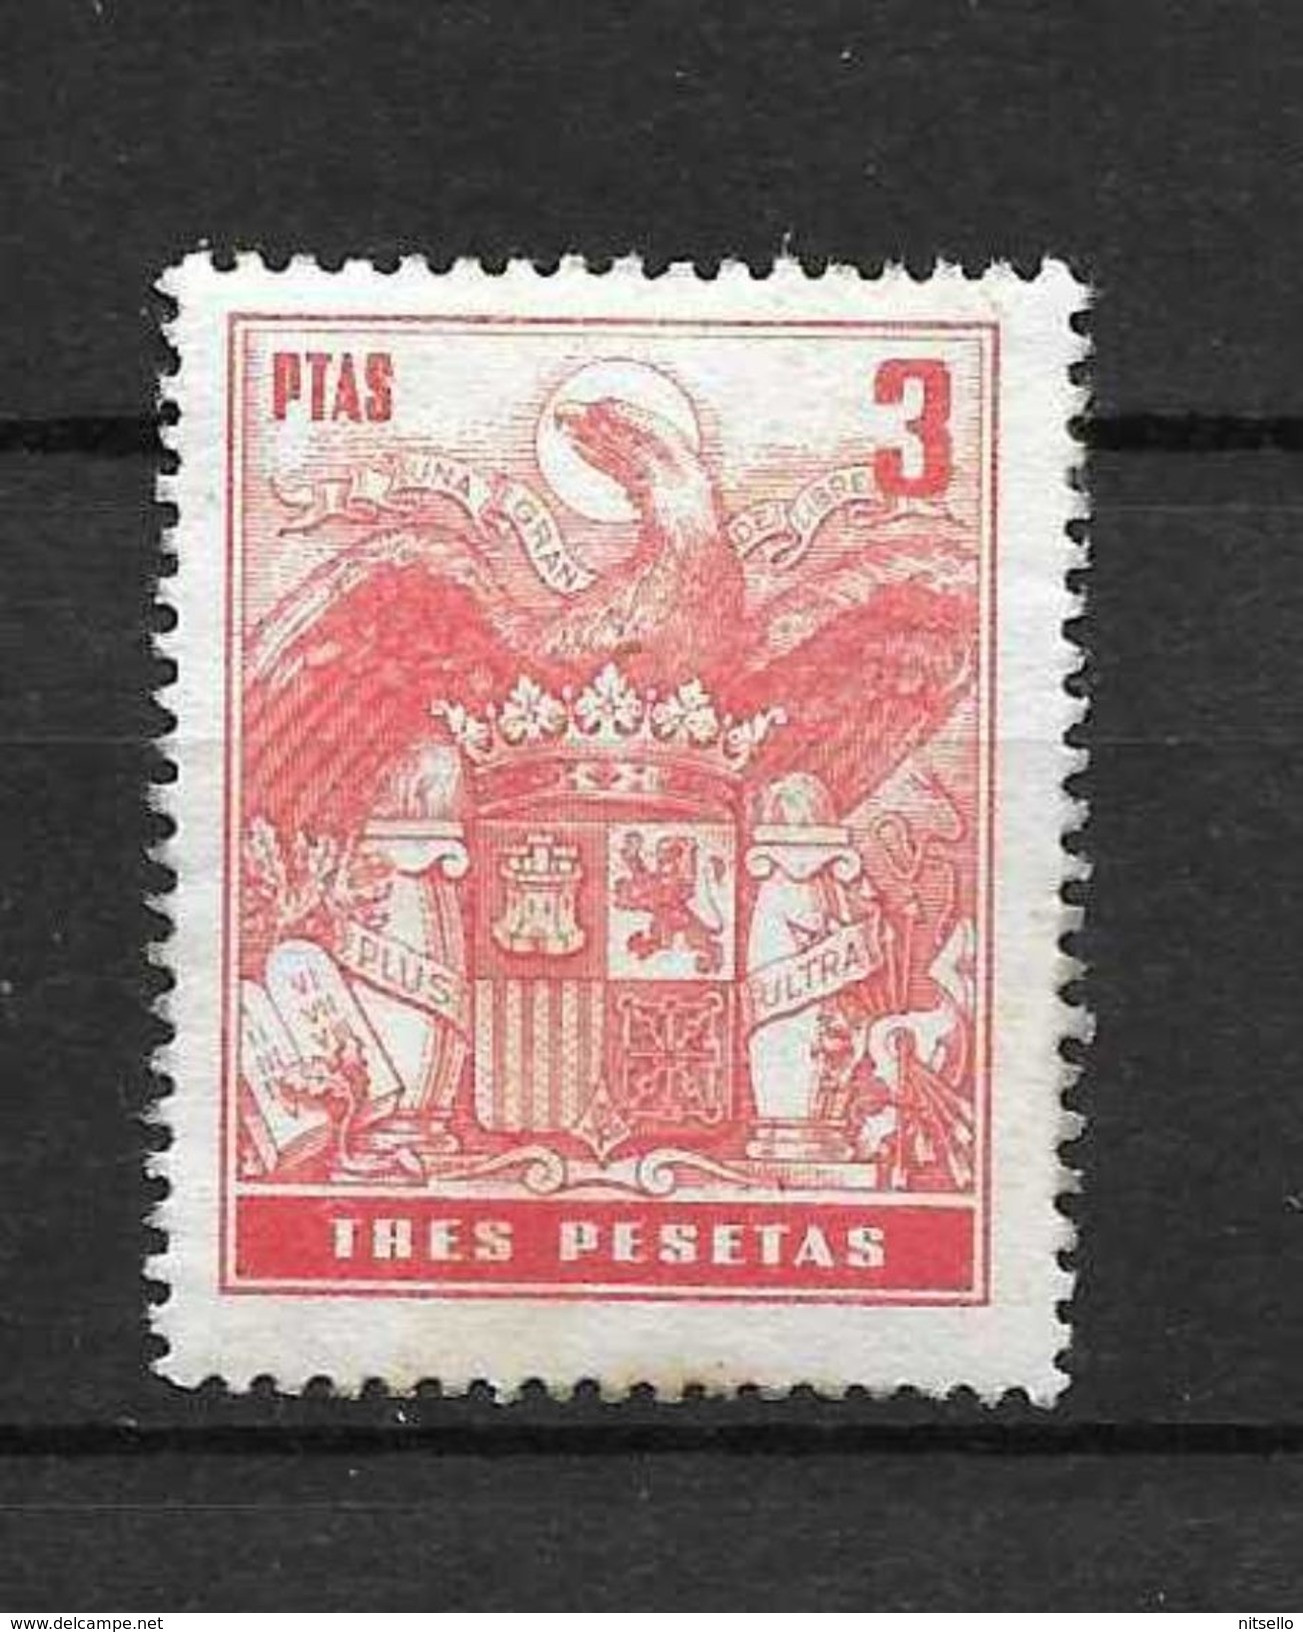 LOTE 1891 D  ///  ESPAÑA  SELLOS FISCALES  -  3 PTAS   SIN GOMA - Steuermarken